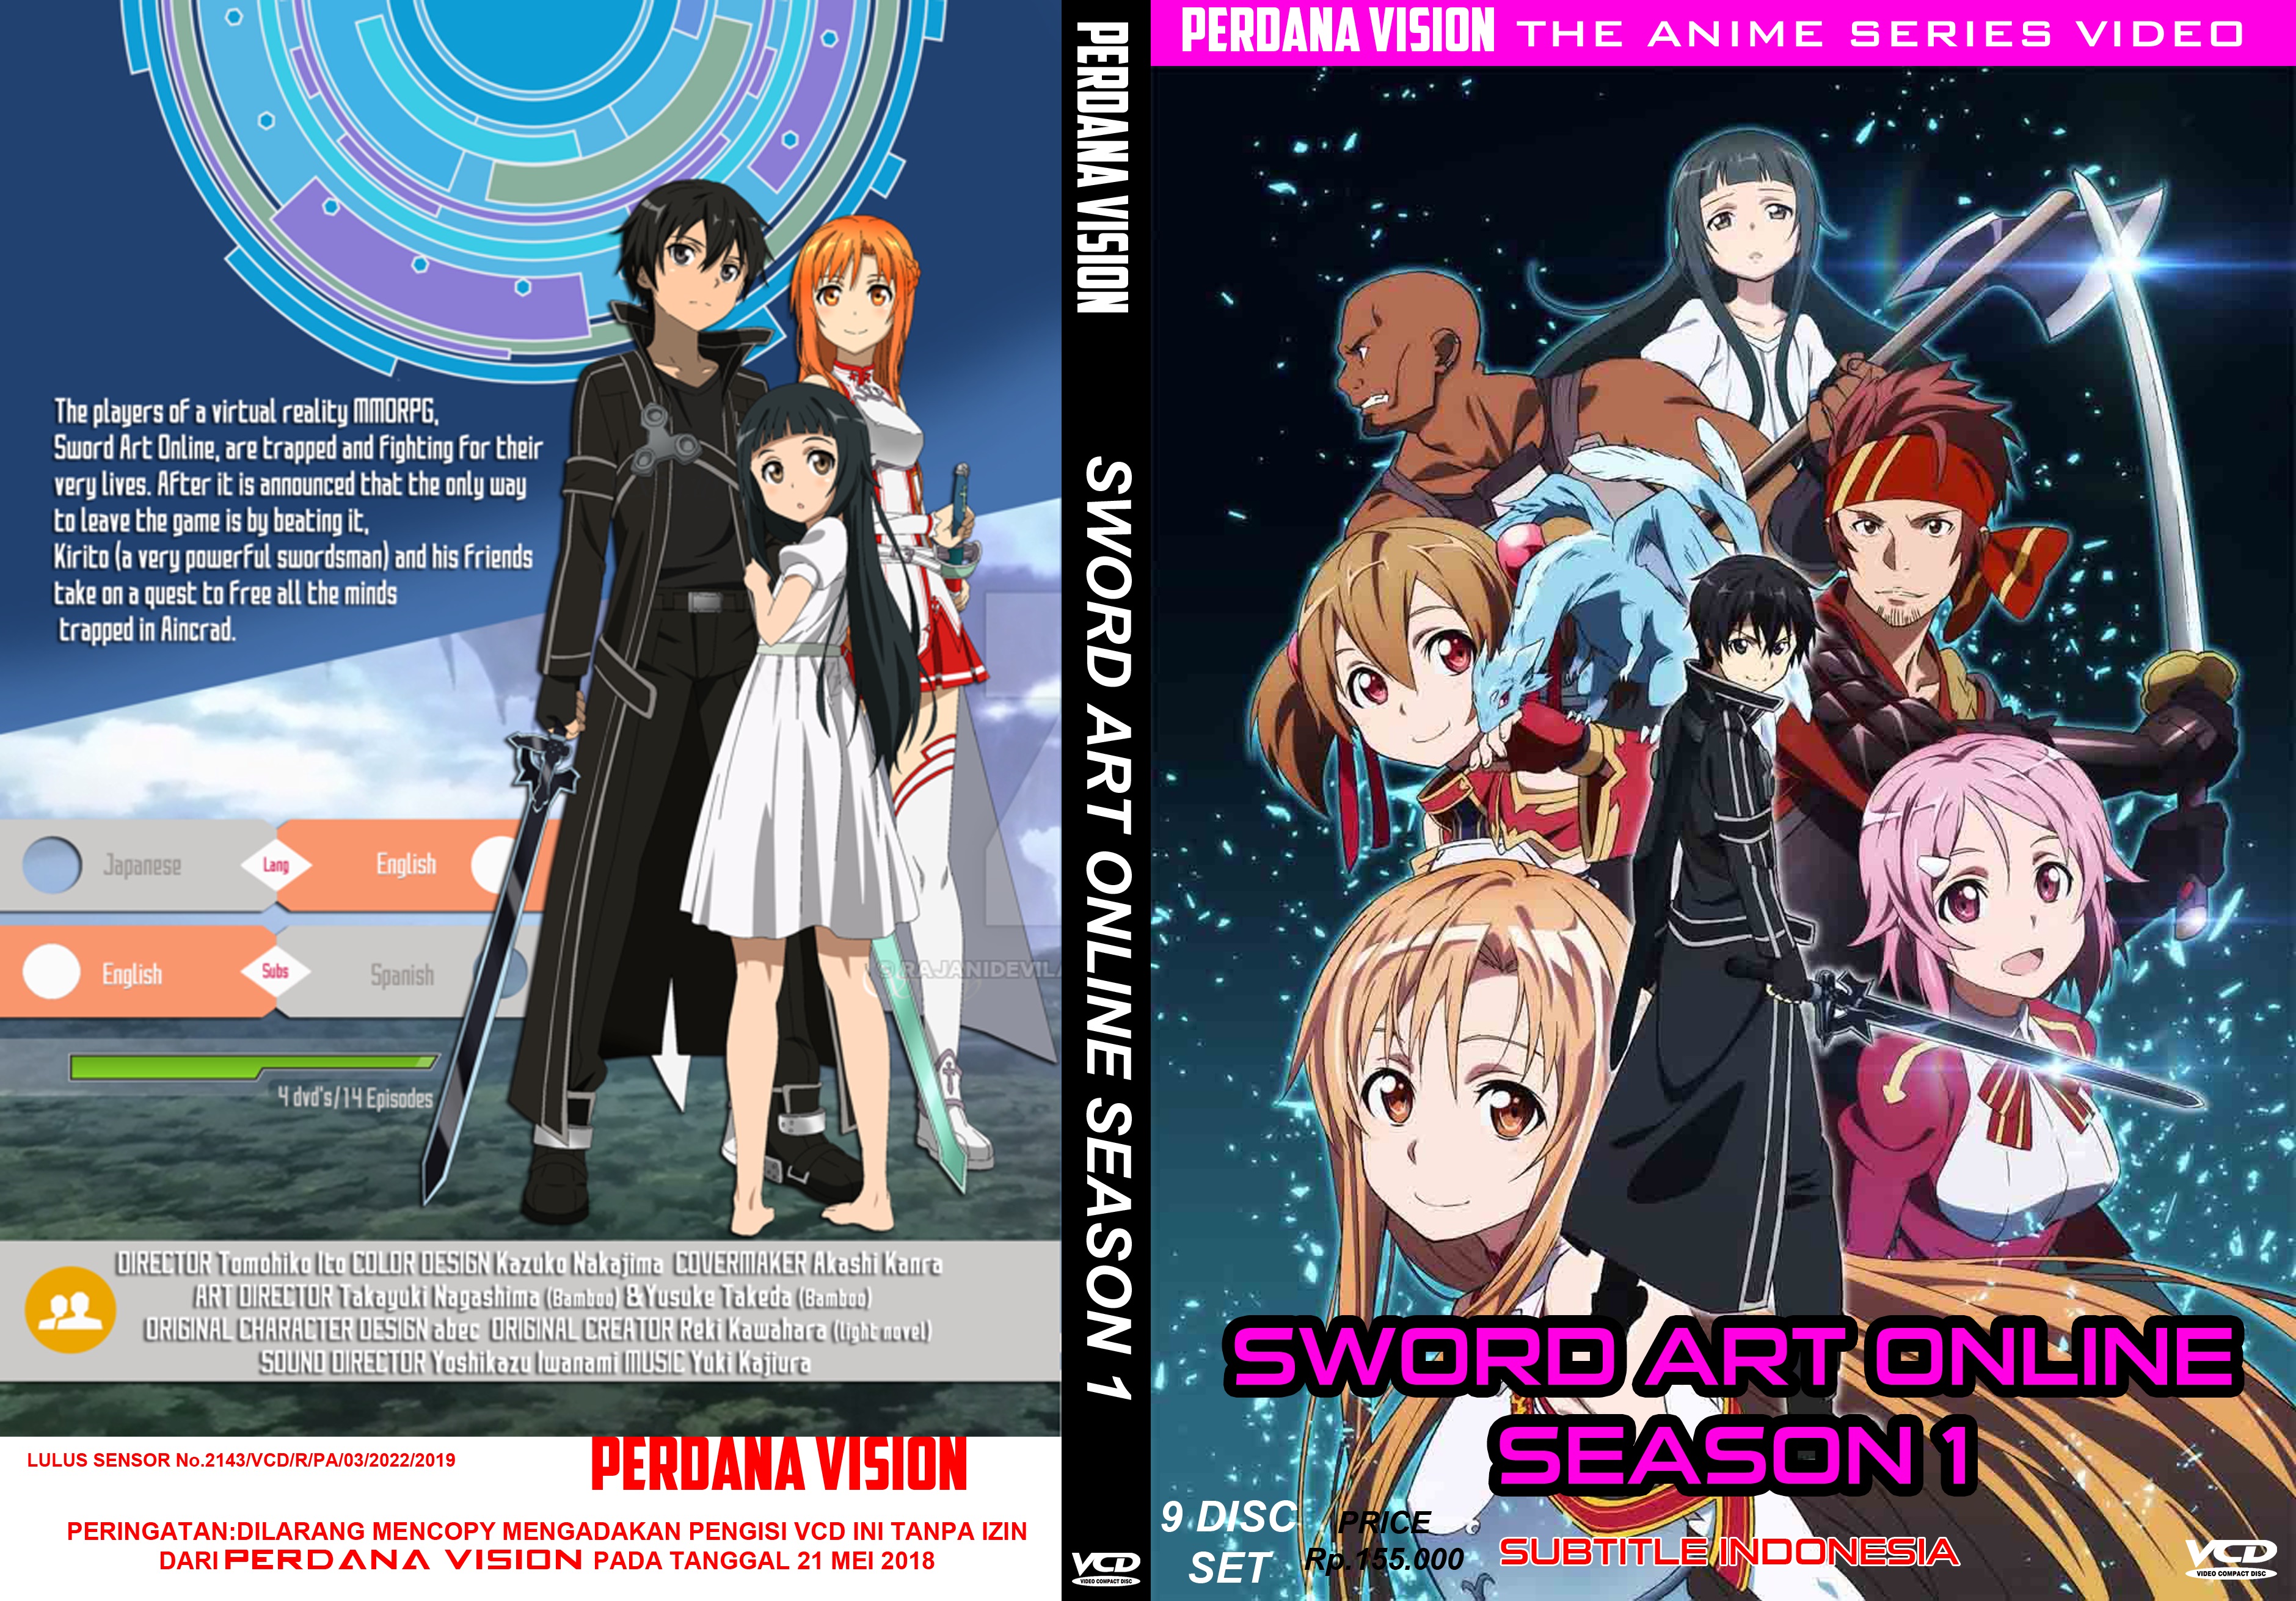 Sword Art Online Season 1 9Disc Set VCD (2012) (2019) : Perdana